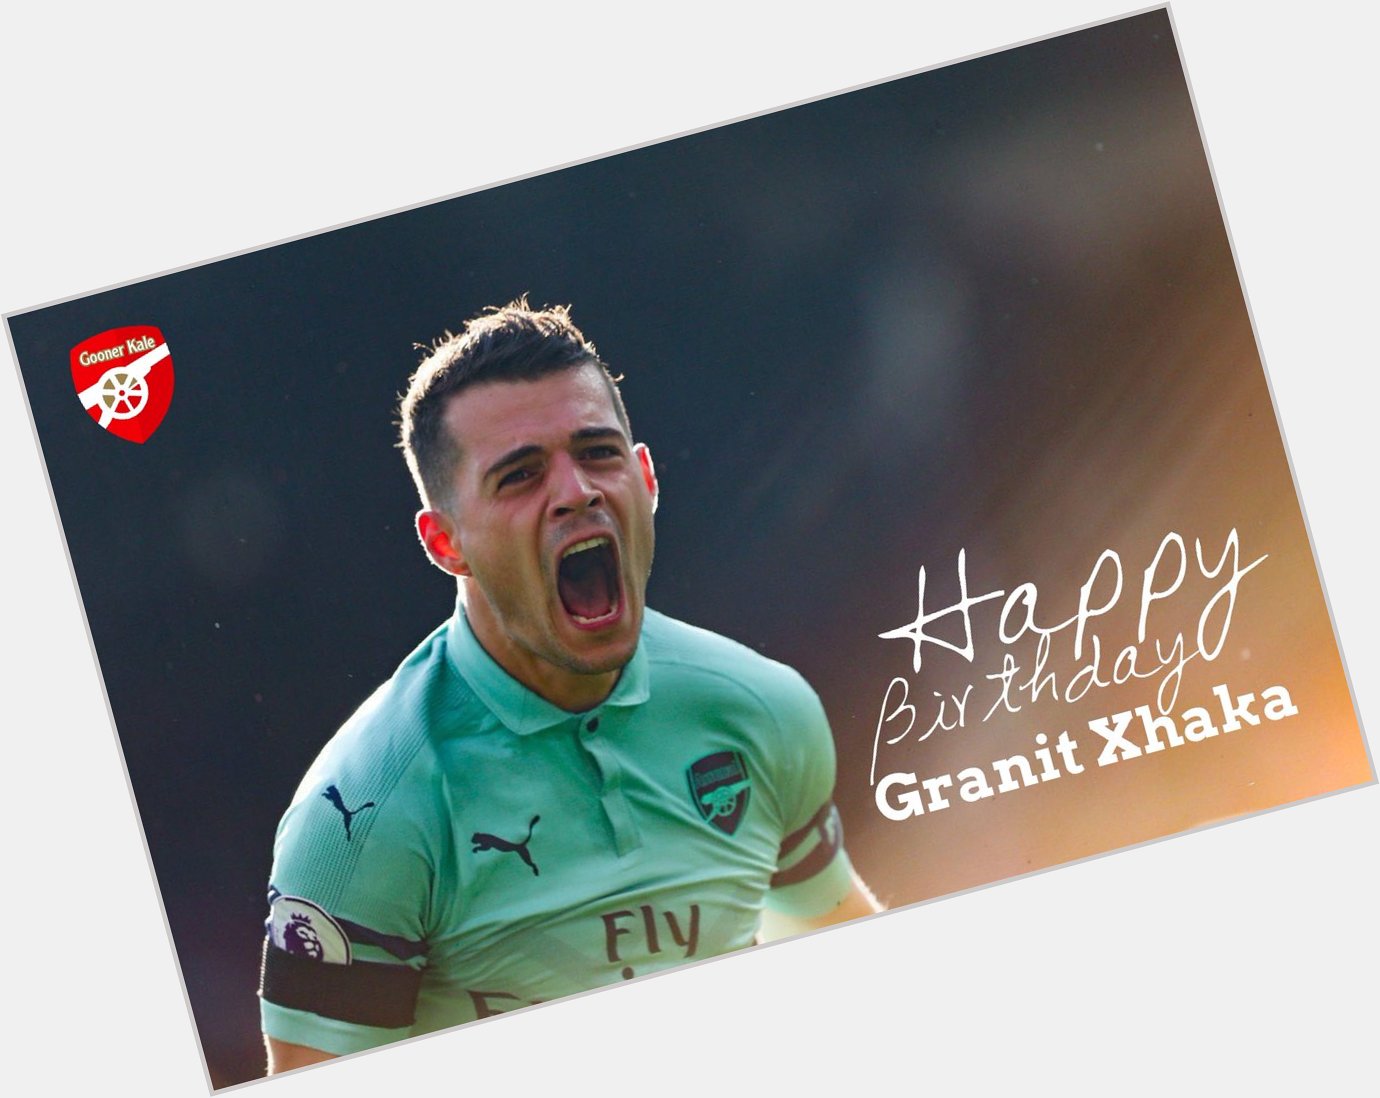 Happy birthday Granit Xhaka. 